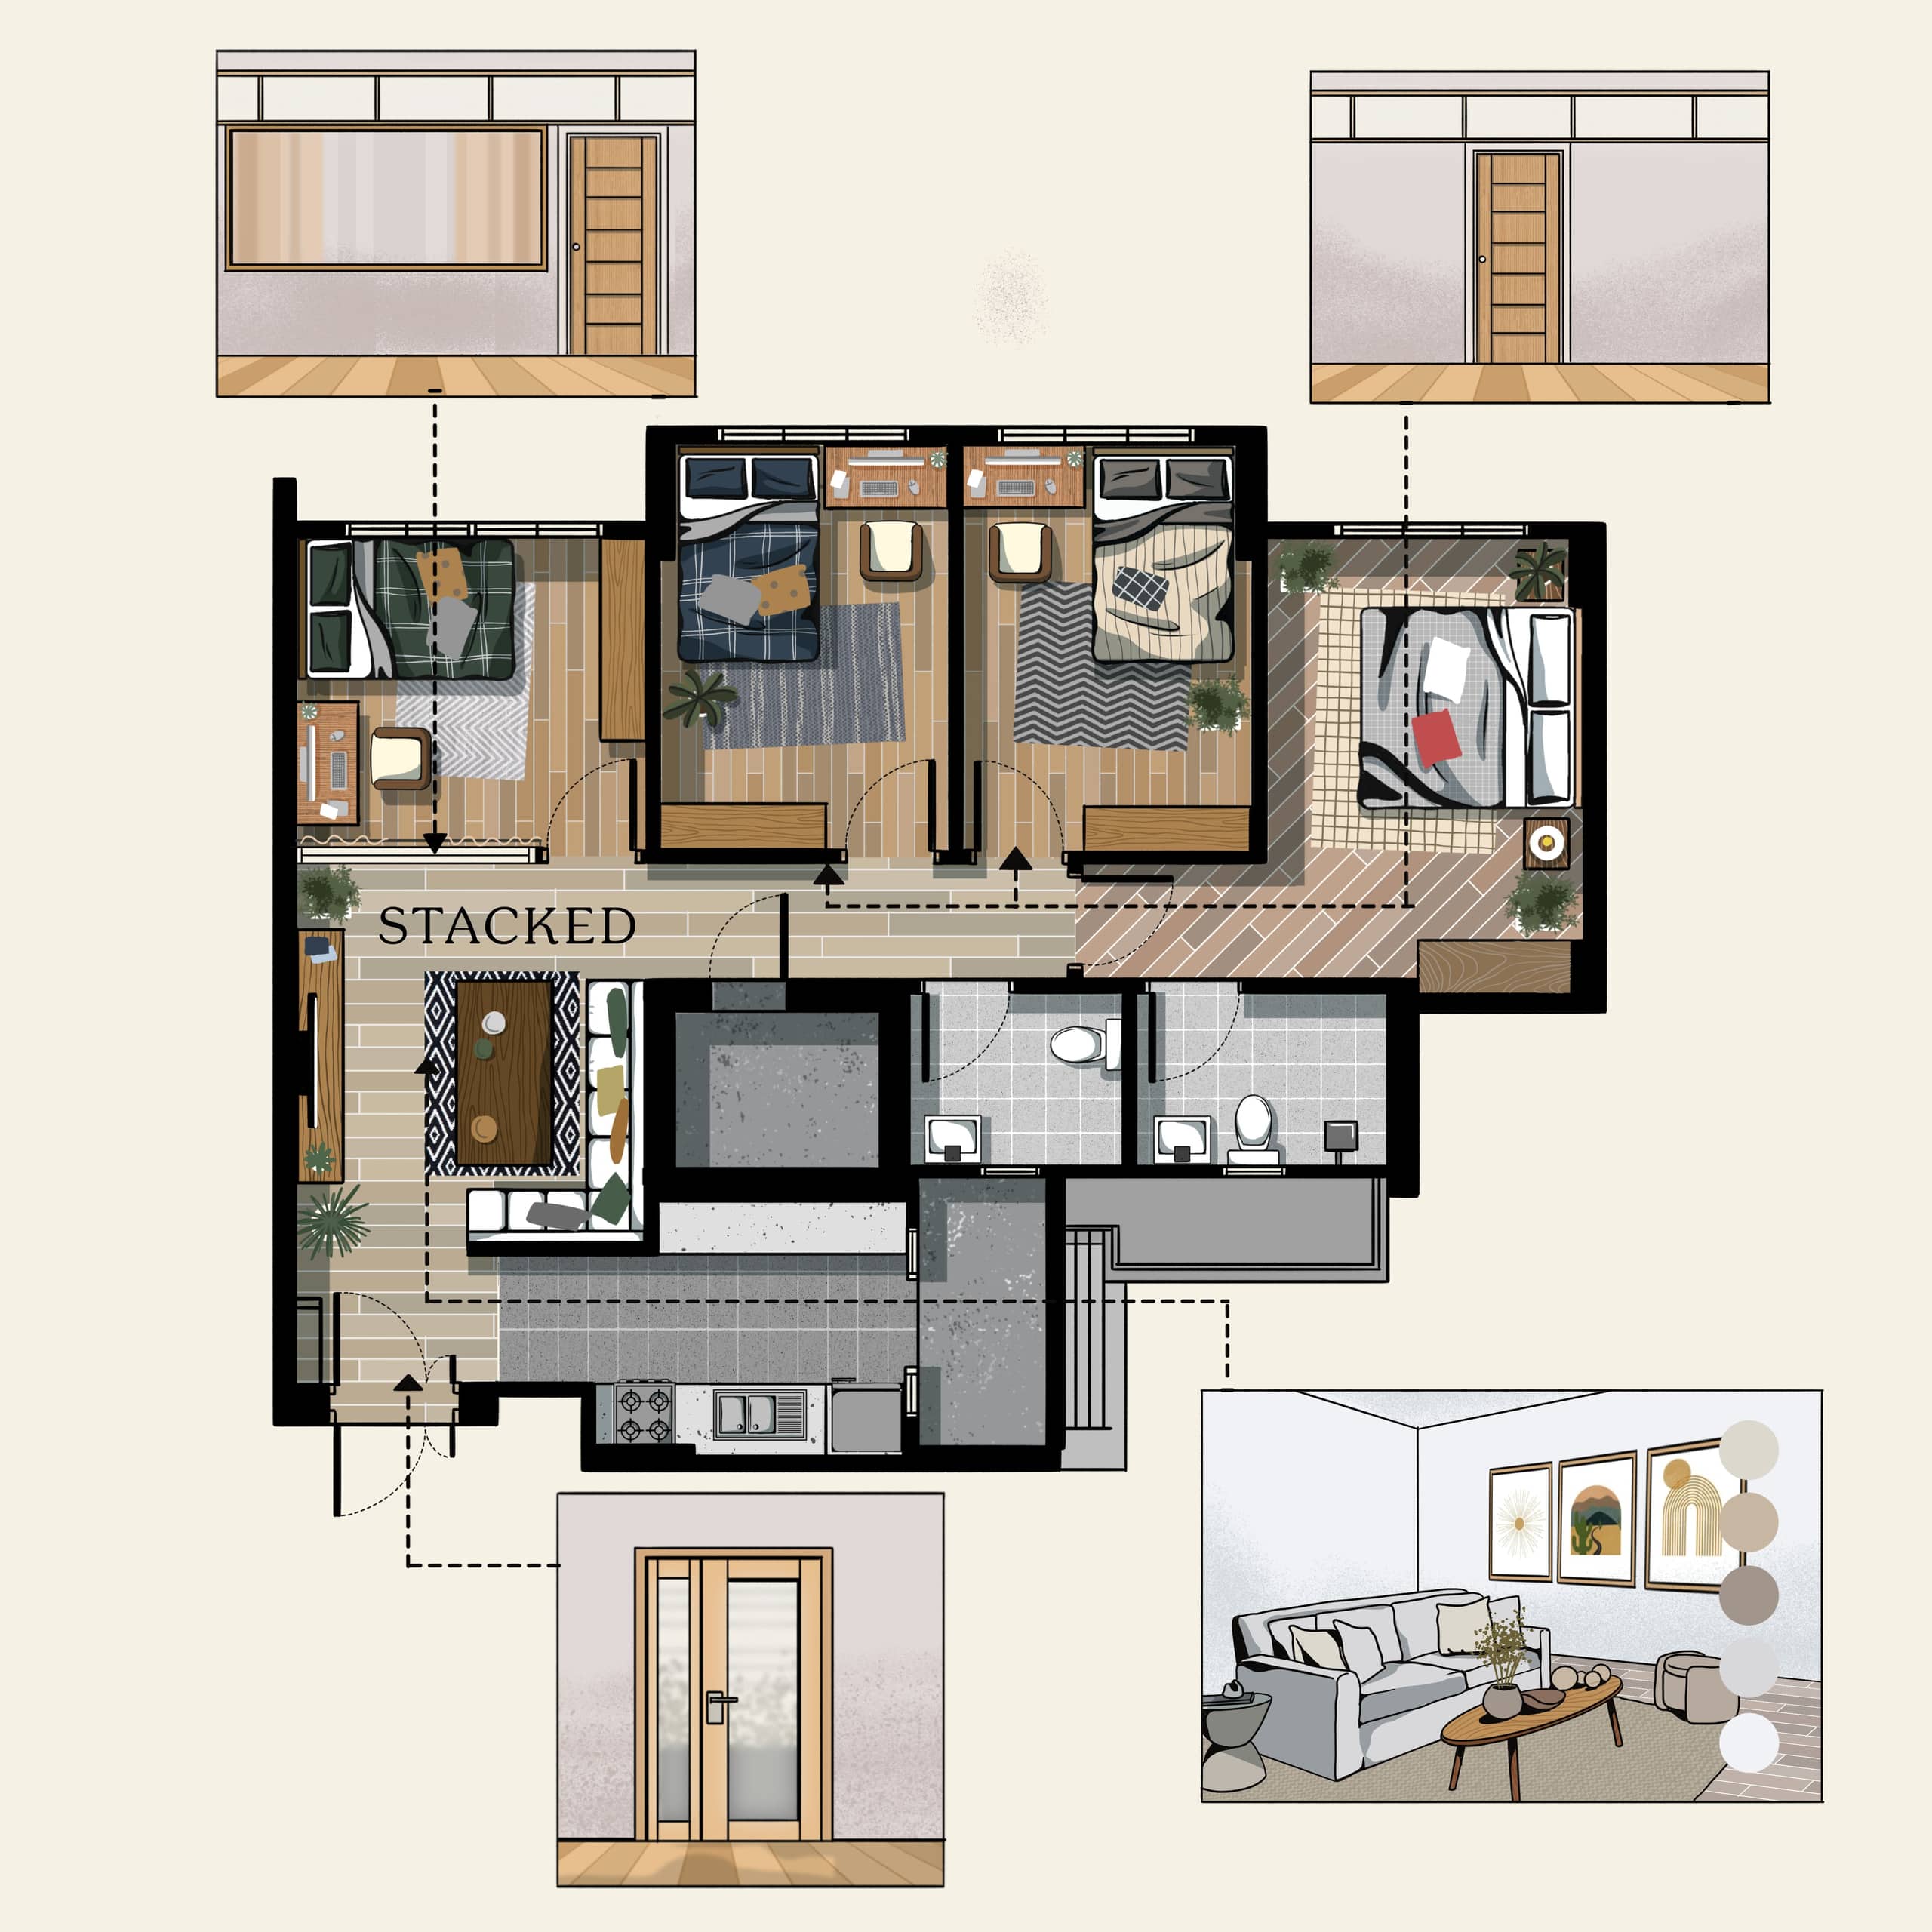 3 bedroom to 4 bedroom layout